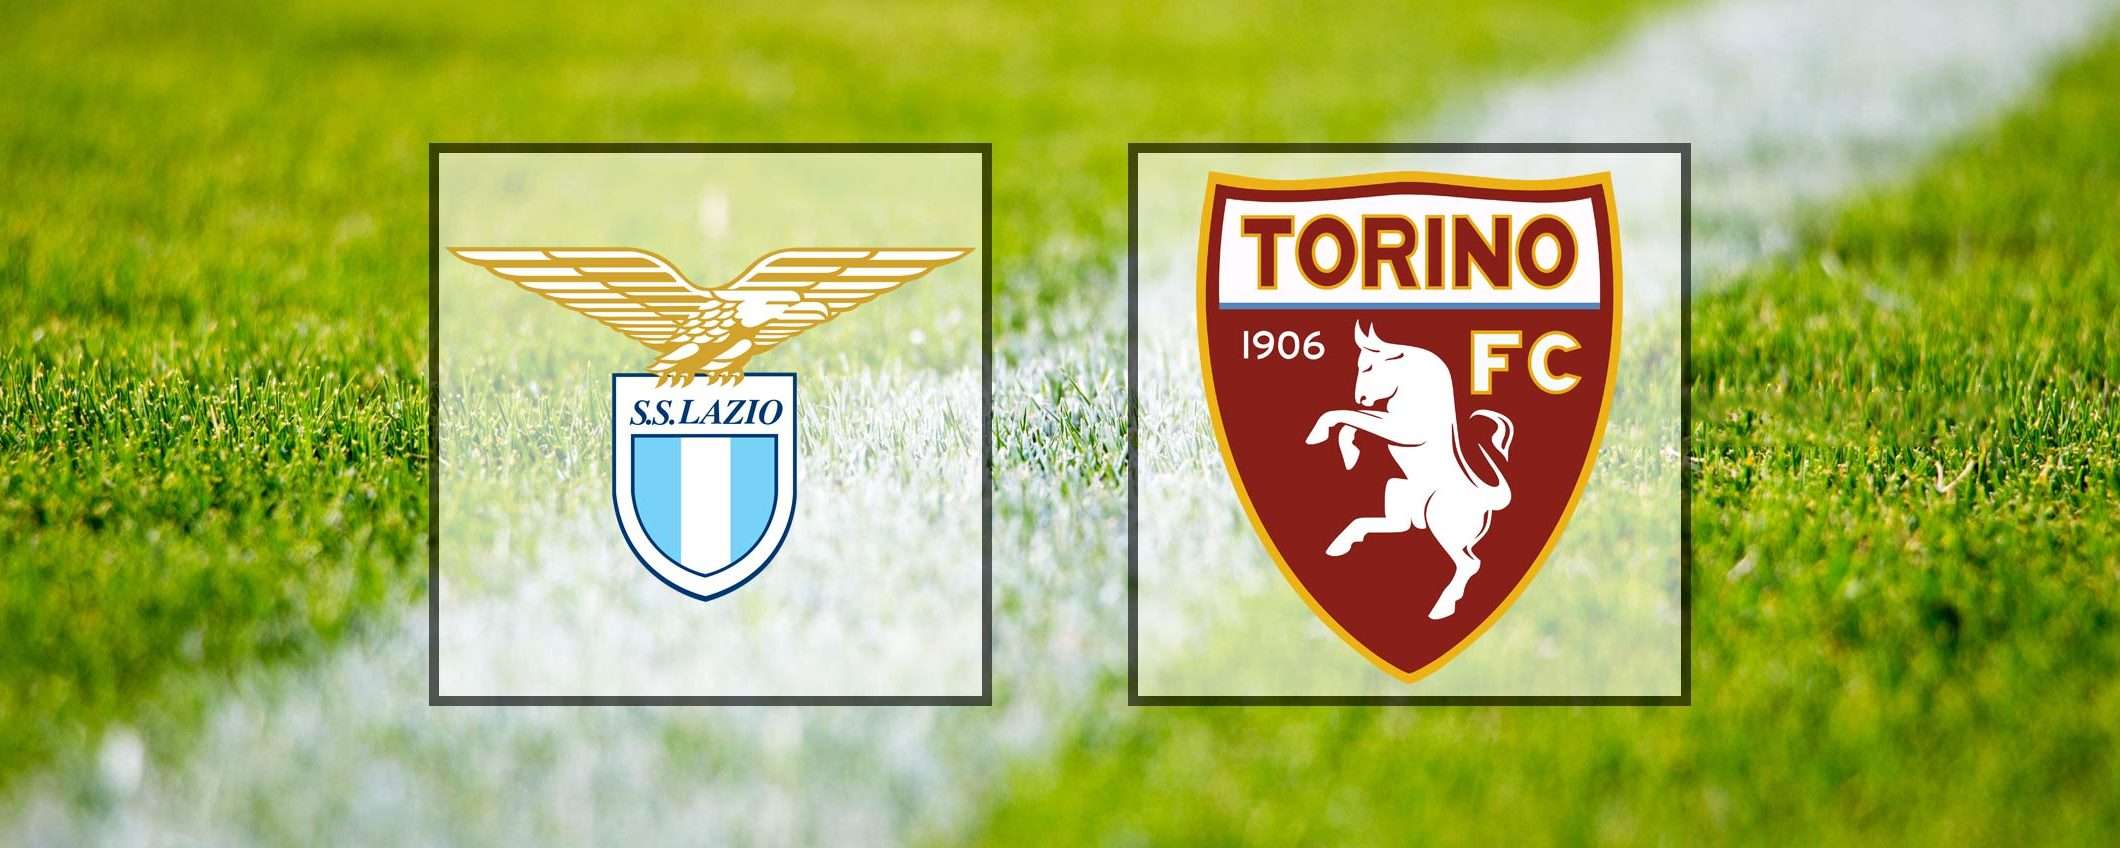 Come vedere Lazio-Torino in streaming (Serie A)